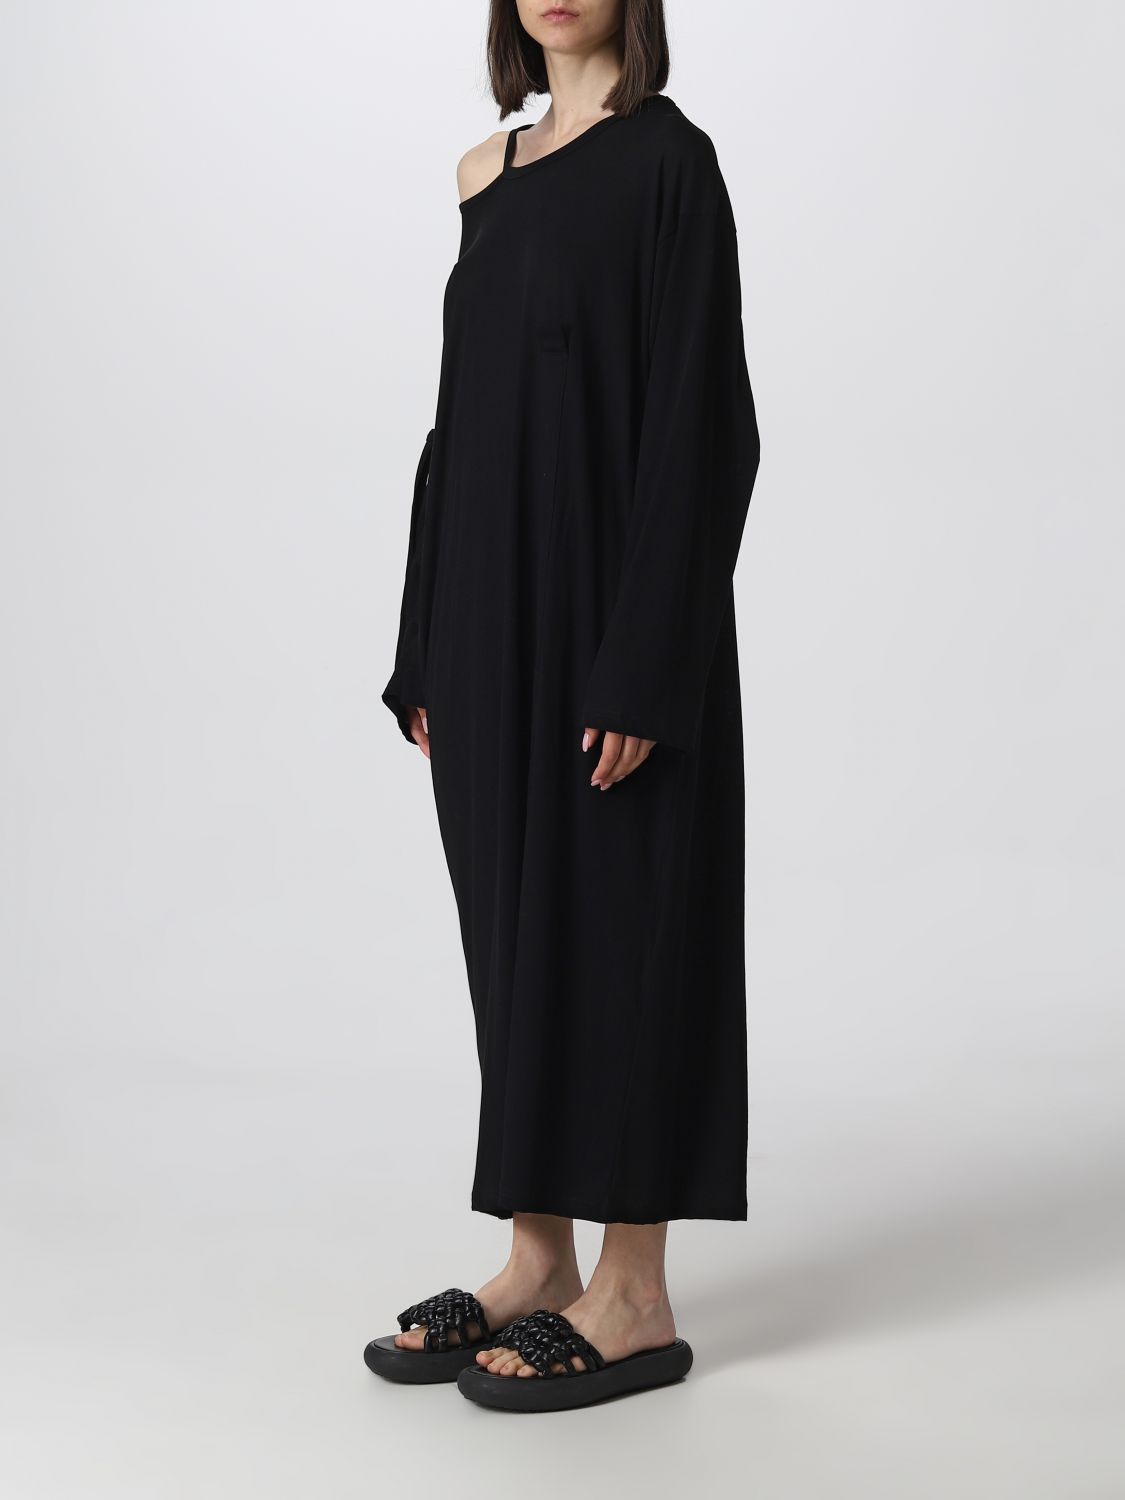 YOHJI YAMAMOTO: dress for woman - Black | Yohji Yamamoto dress